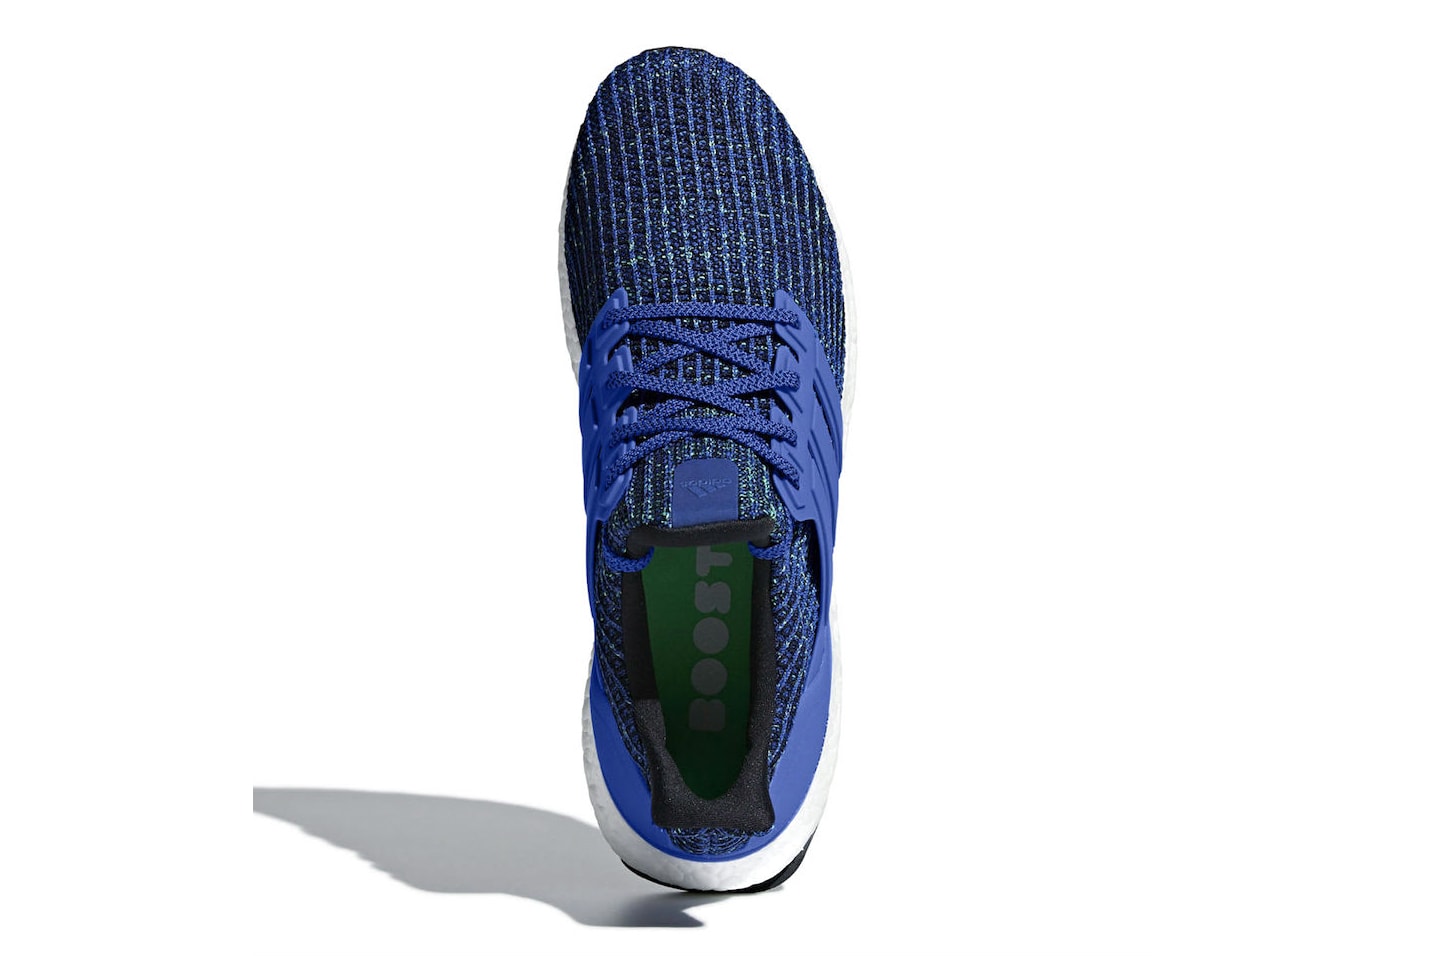 adidas UltraBOOST 4.0 Hi Res Blue first look sneakers footwear